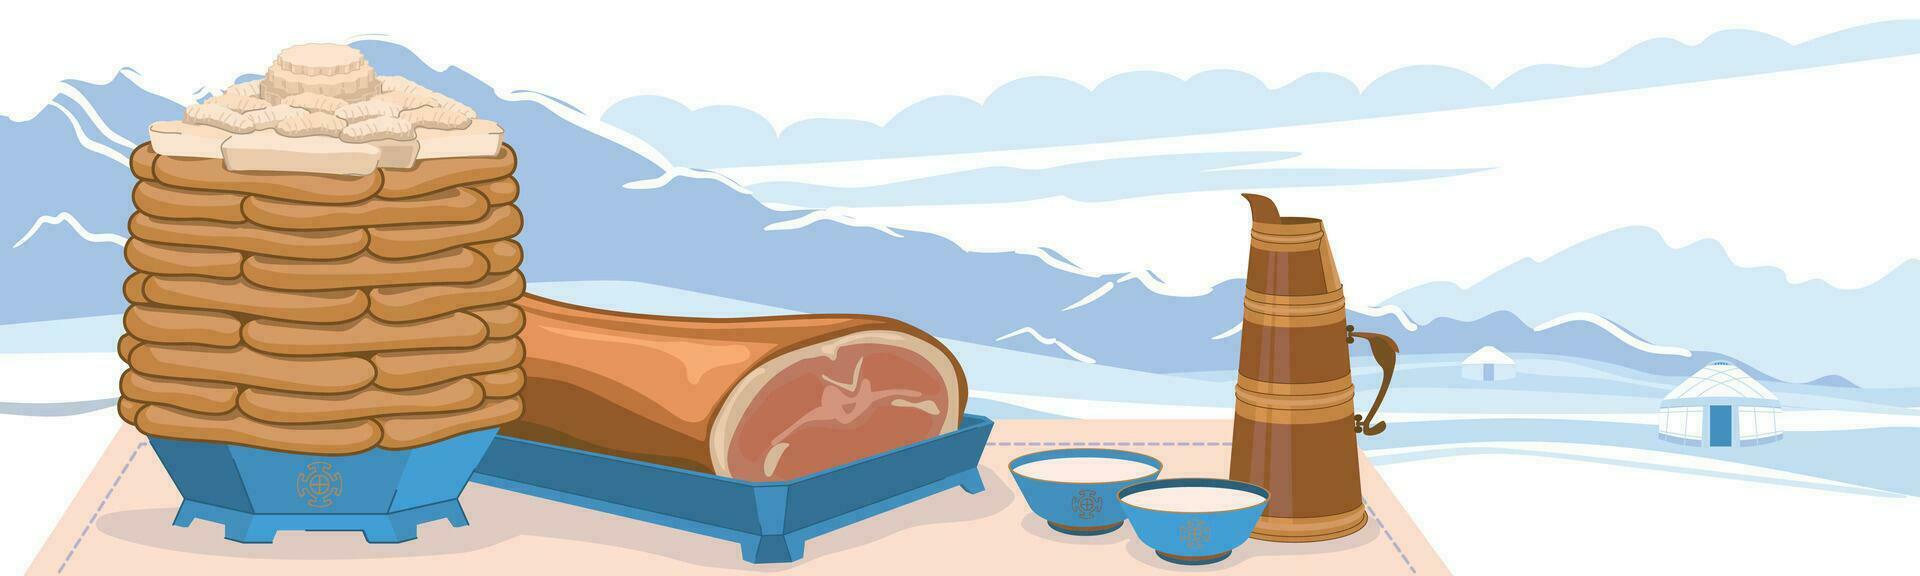 tradicional pratos para a celebração do a mongol Novo ano - tsagaan sar. tortas e chalé queijo. assado ovelha grumos e leite chá contra a pano de fundo do uma inverno panorama. vetor. vetor